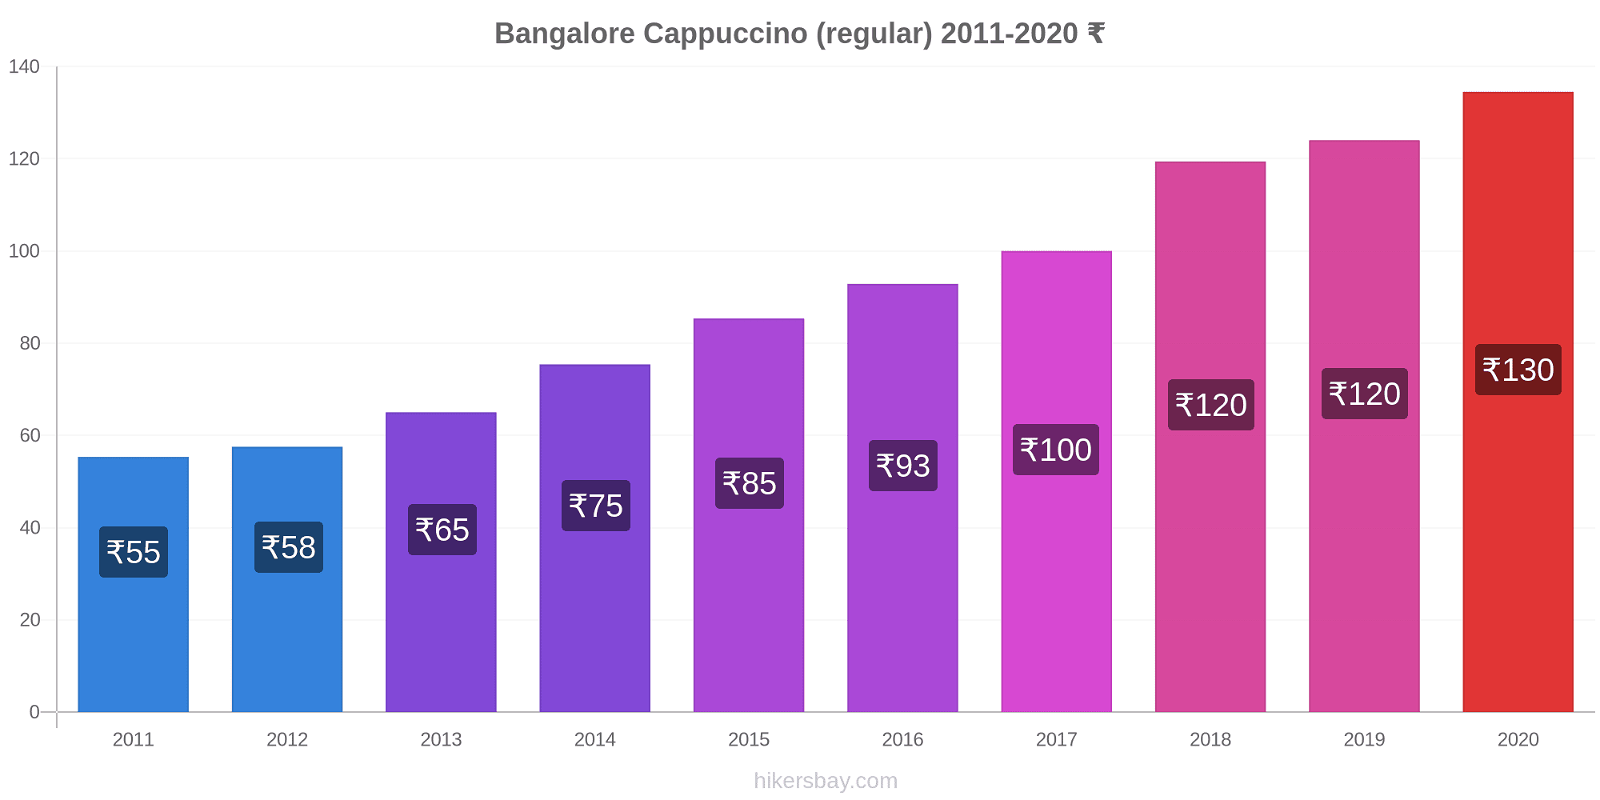 Bangalore variação de preço Capuccino (regular) hikersbay.com